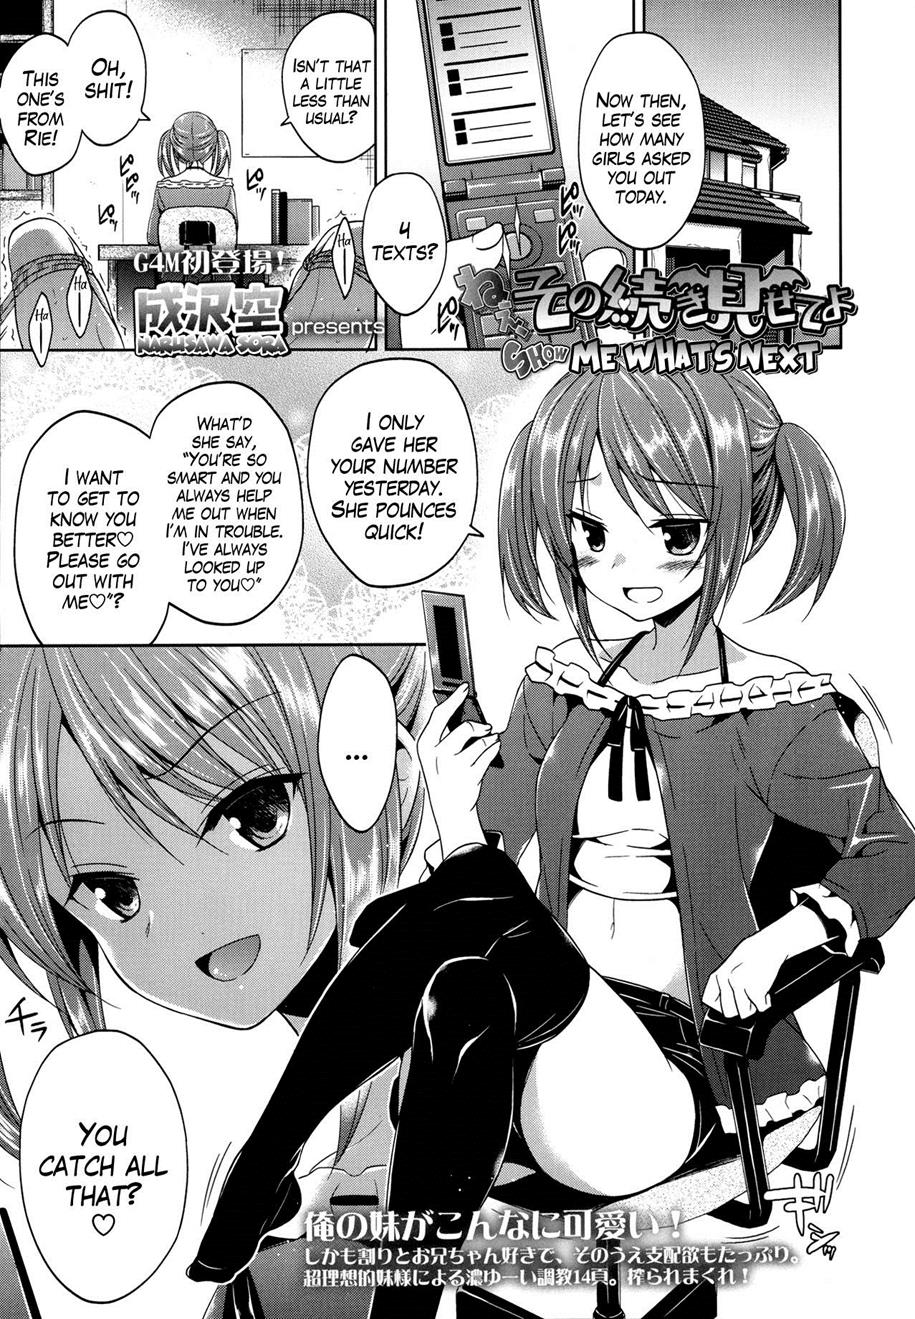 Reading Girls For M Akai Mato Original Hentai By Akai Mato 10